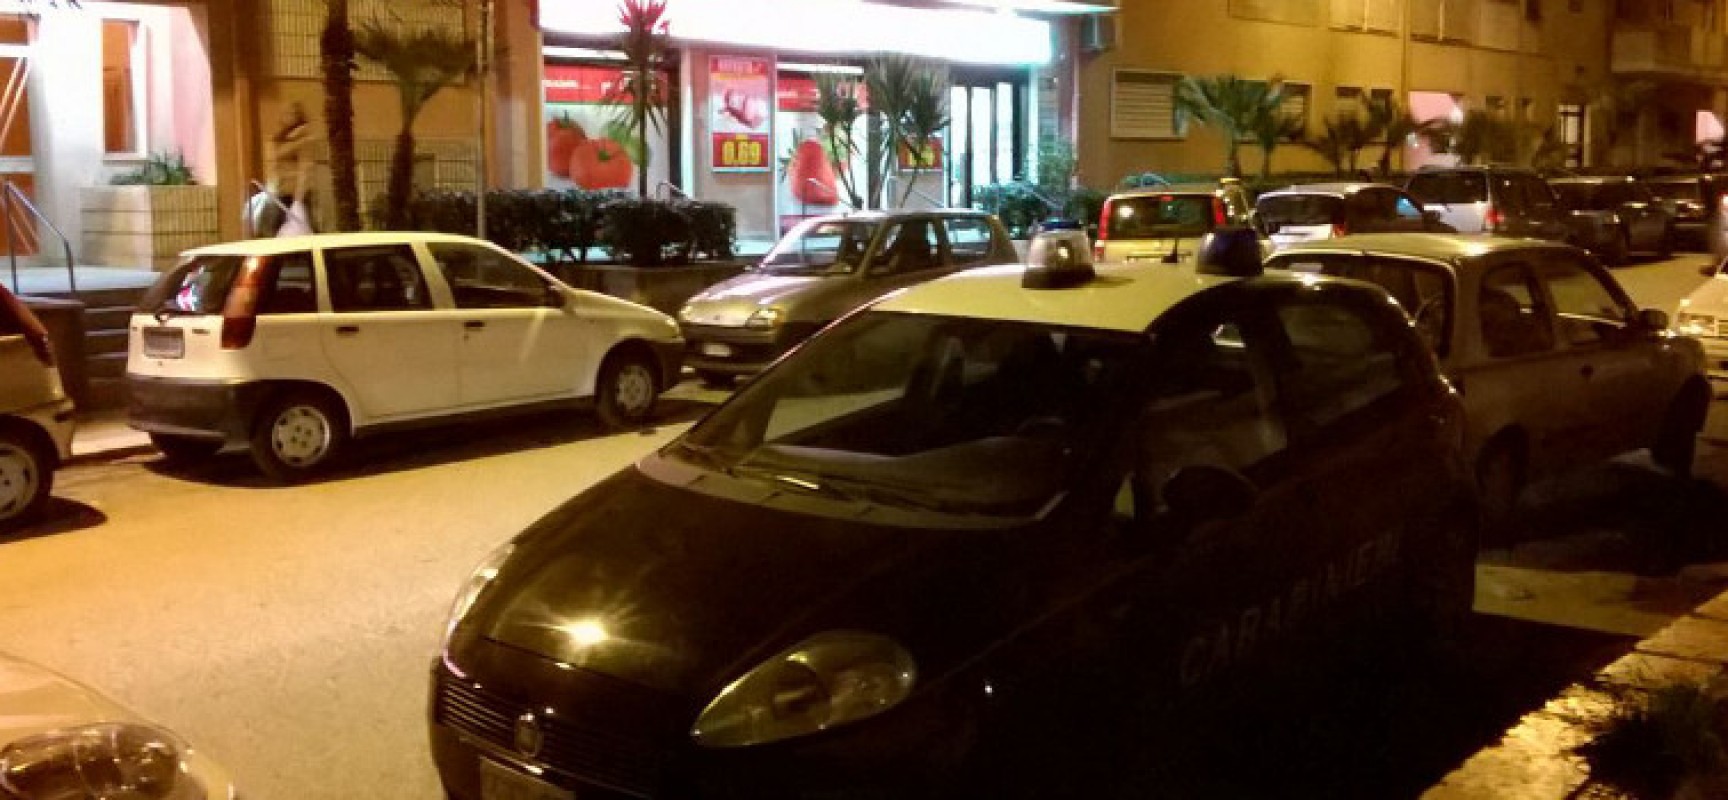 Rapinato il supermarket Despar di via Sacerdote di Leo, in corso le indagini dei Carabinieri